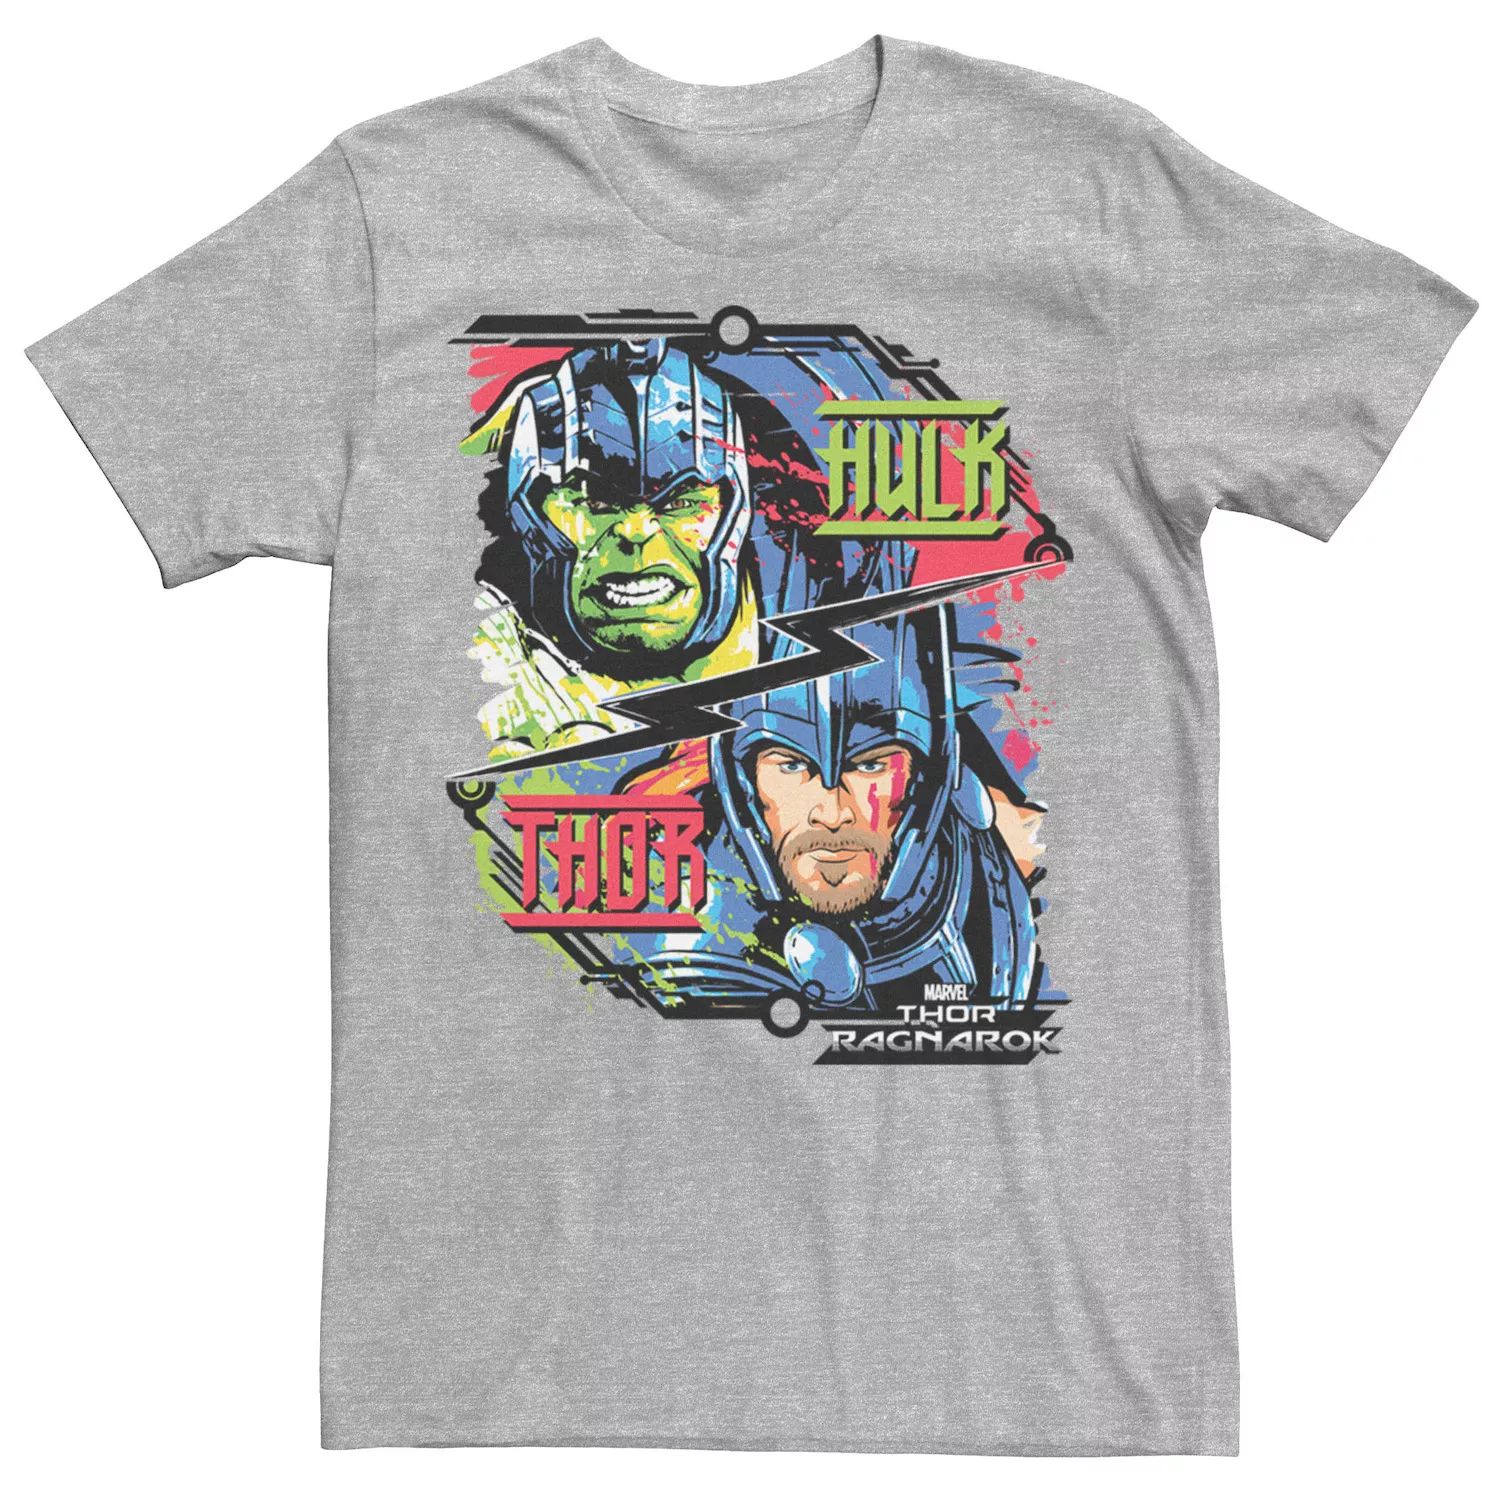 Мужская футболка Marvel Thor Ragnarok Hulk Champ vs God of Thunder Licensed Character